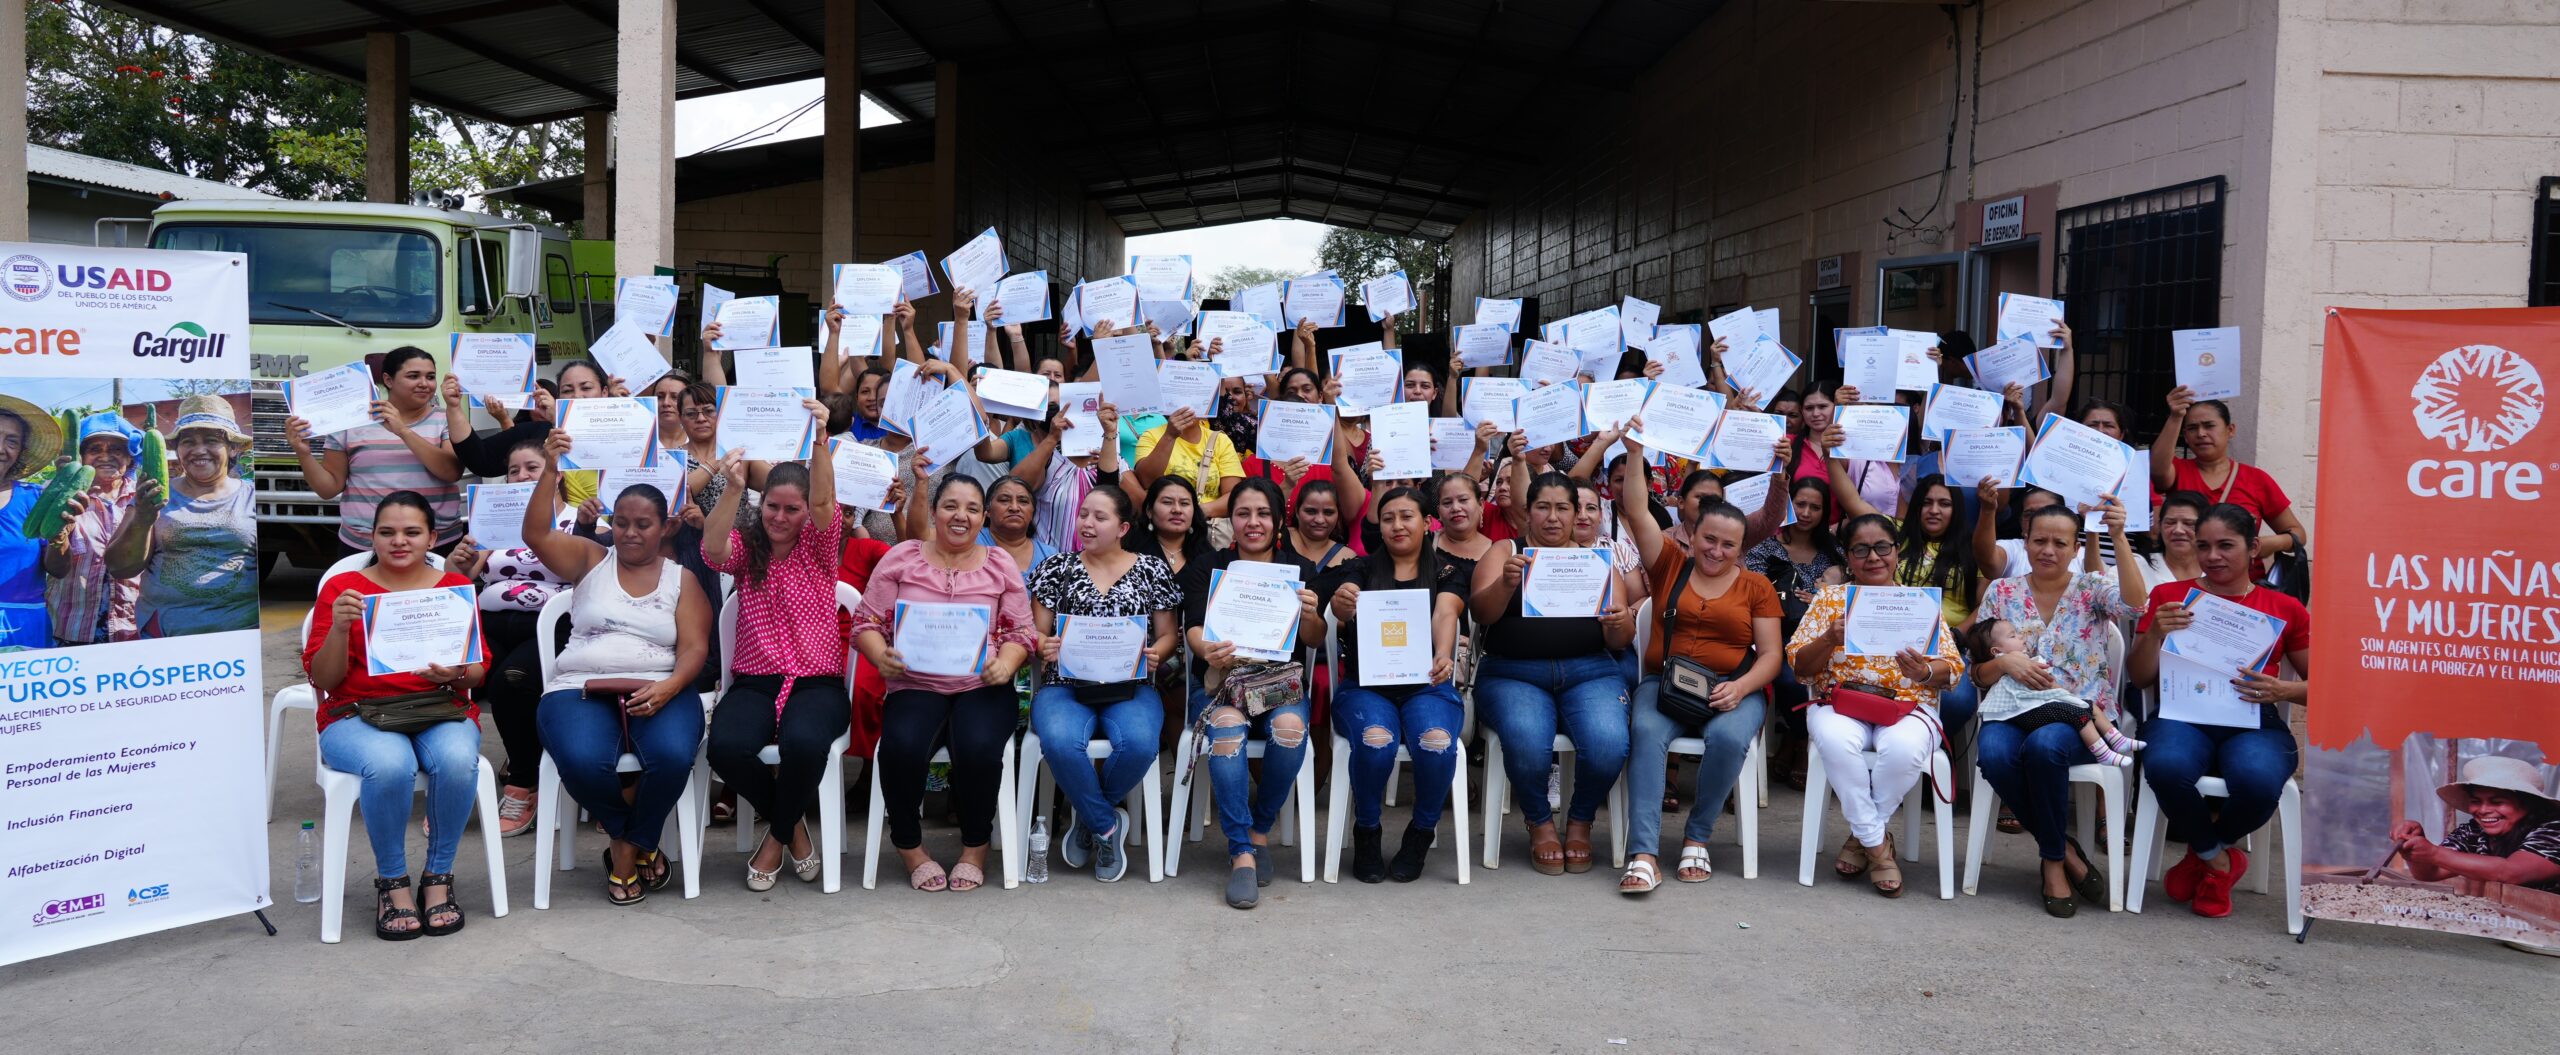 Fortaleciendo la capacidad de alcanzar un sueño: mujeres emprendedoras y empoderadas en el norte de Honduras